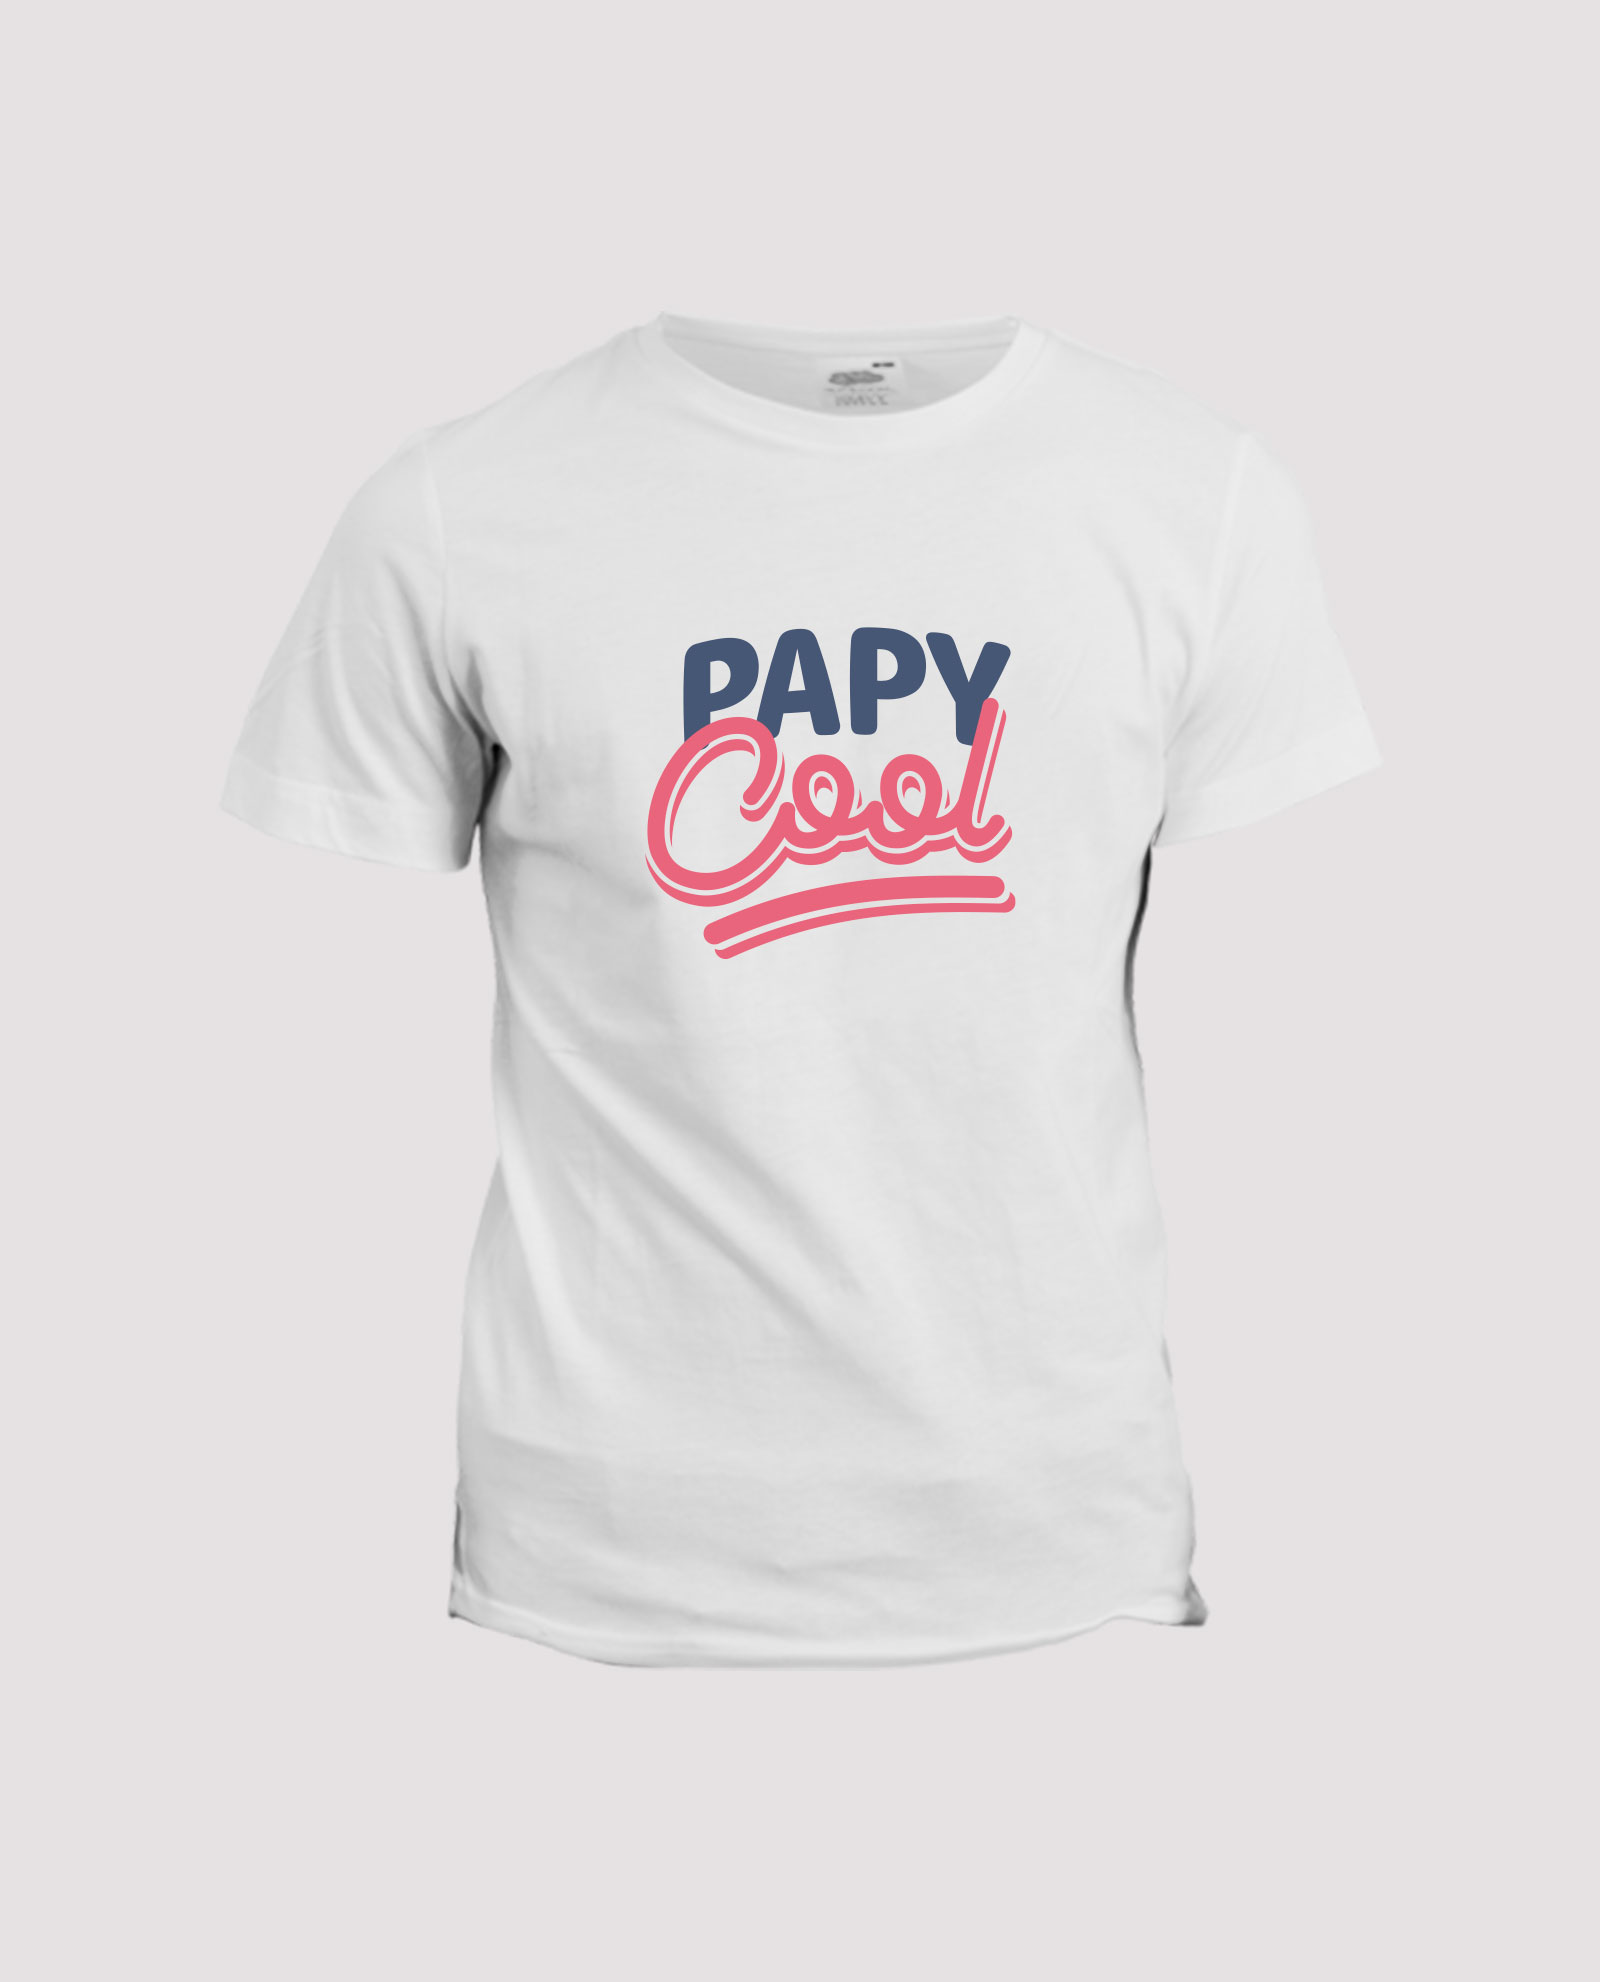 T-Shirt Papa en Or personnalisable | idée cadeau tshirt personnailsé |  prénom au choix | 100% coton